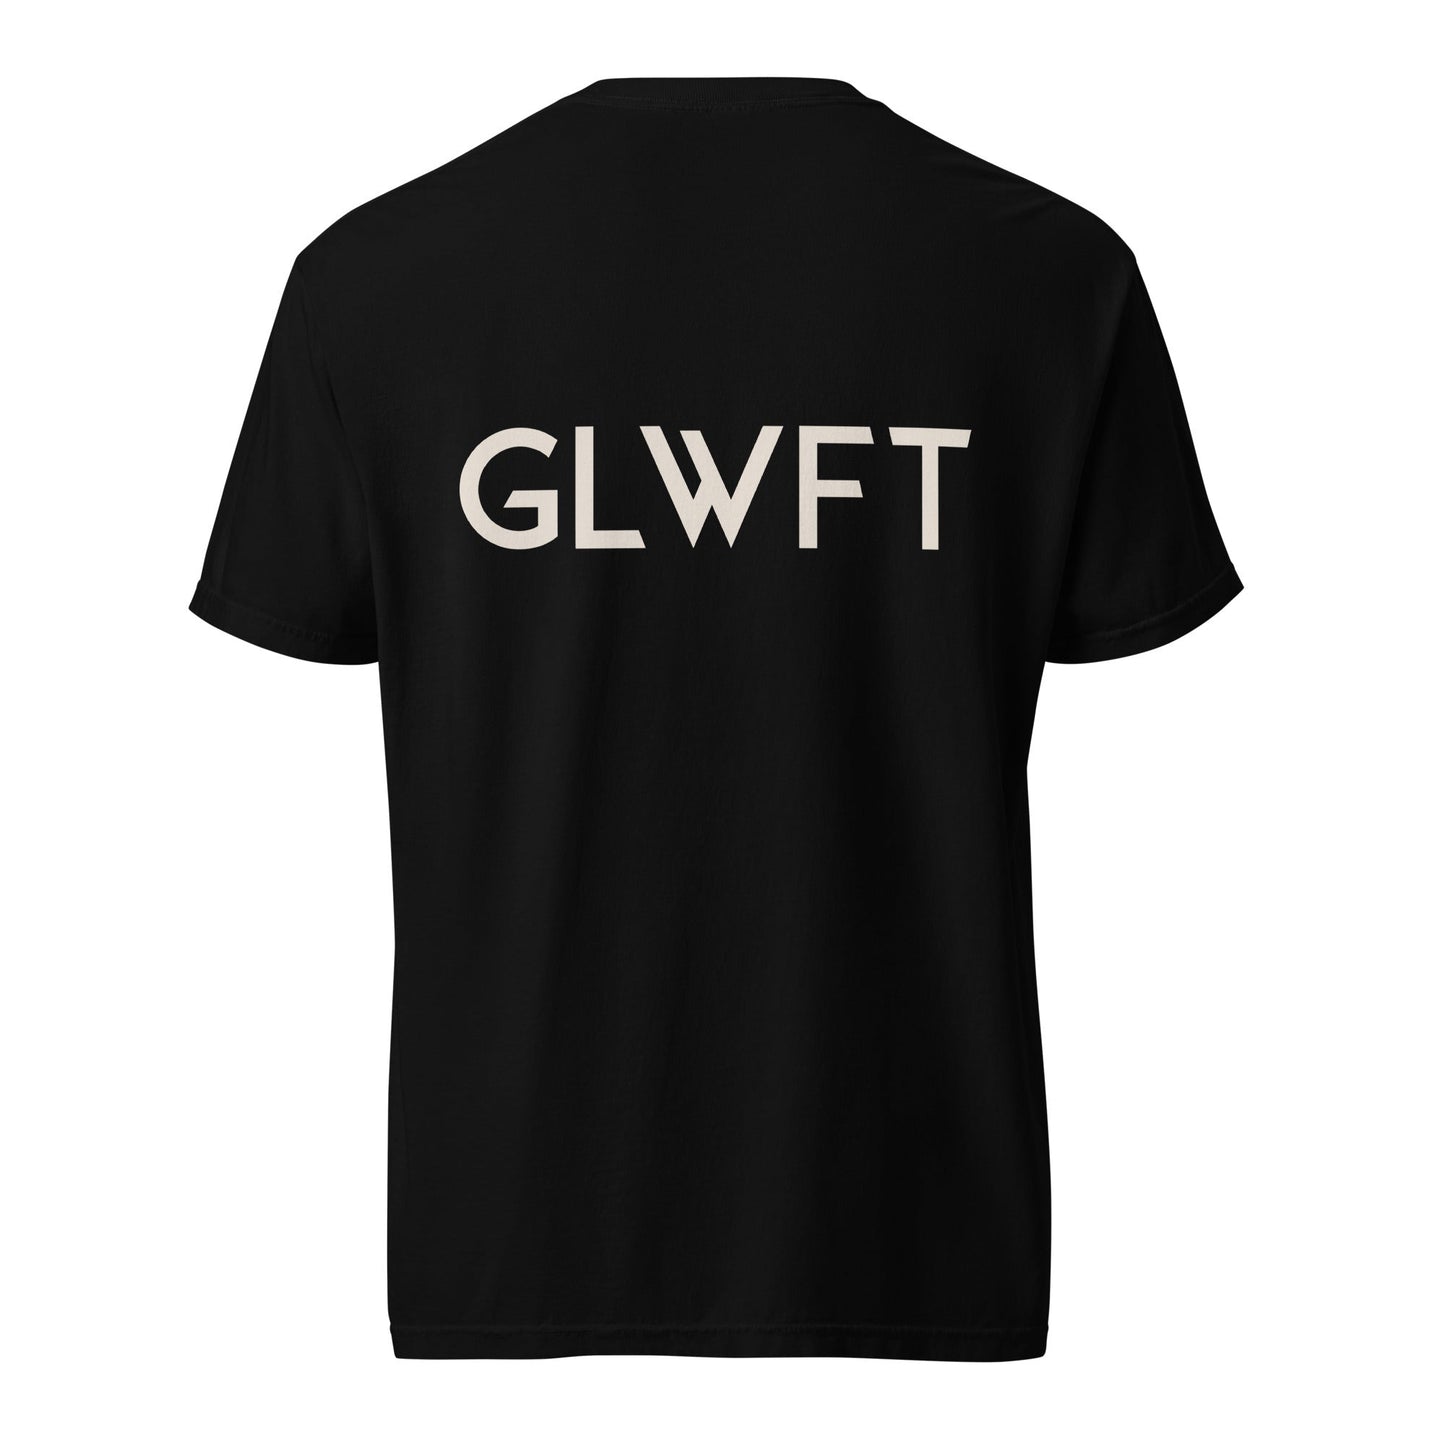 GLWFT Garment-Dyed Heavyweight T-Shirt - glwft.com